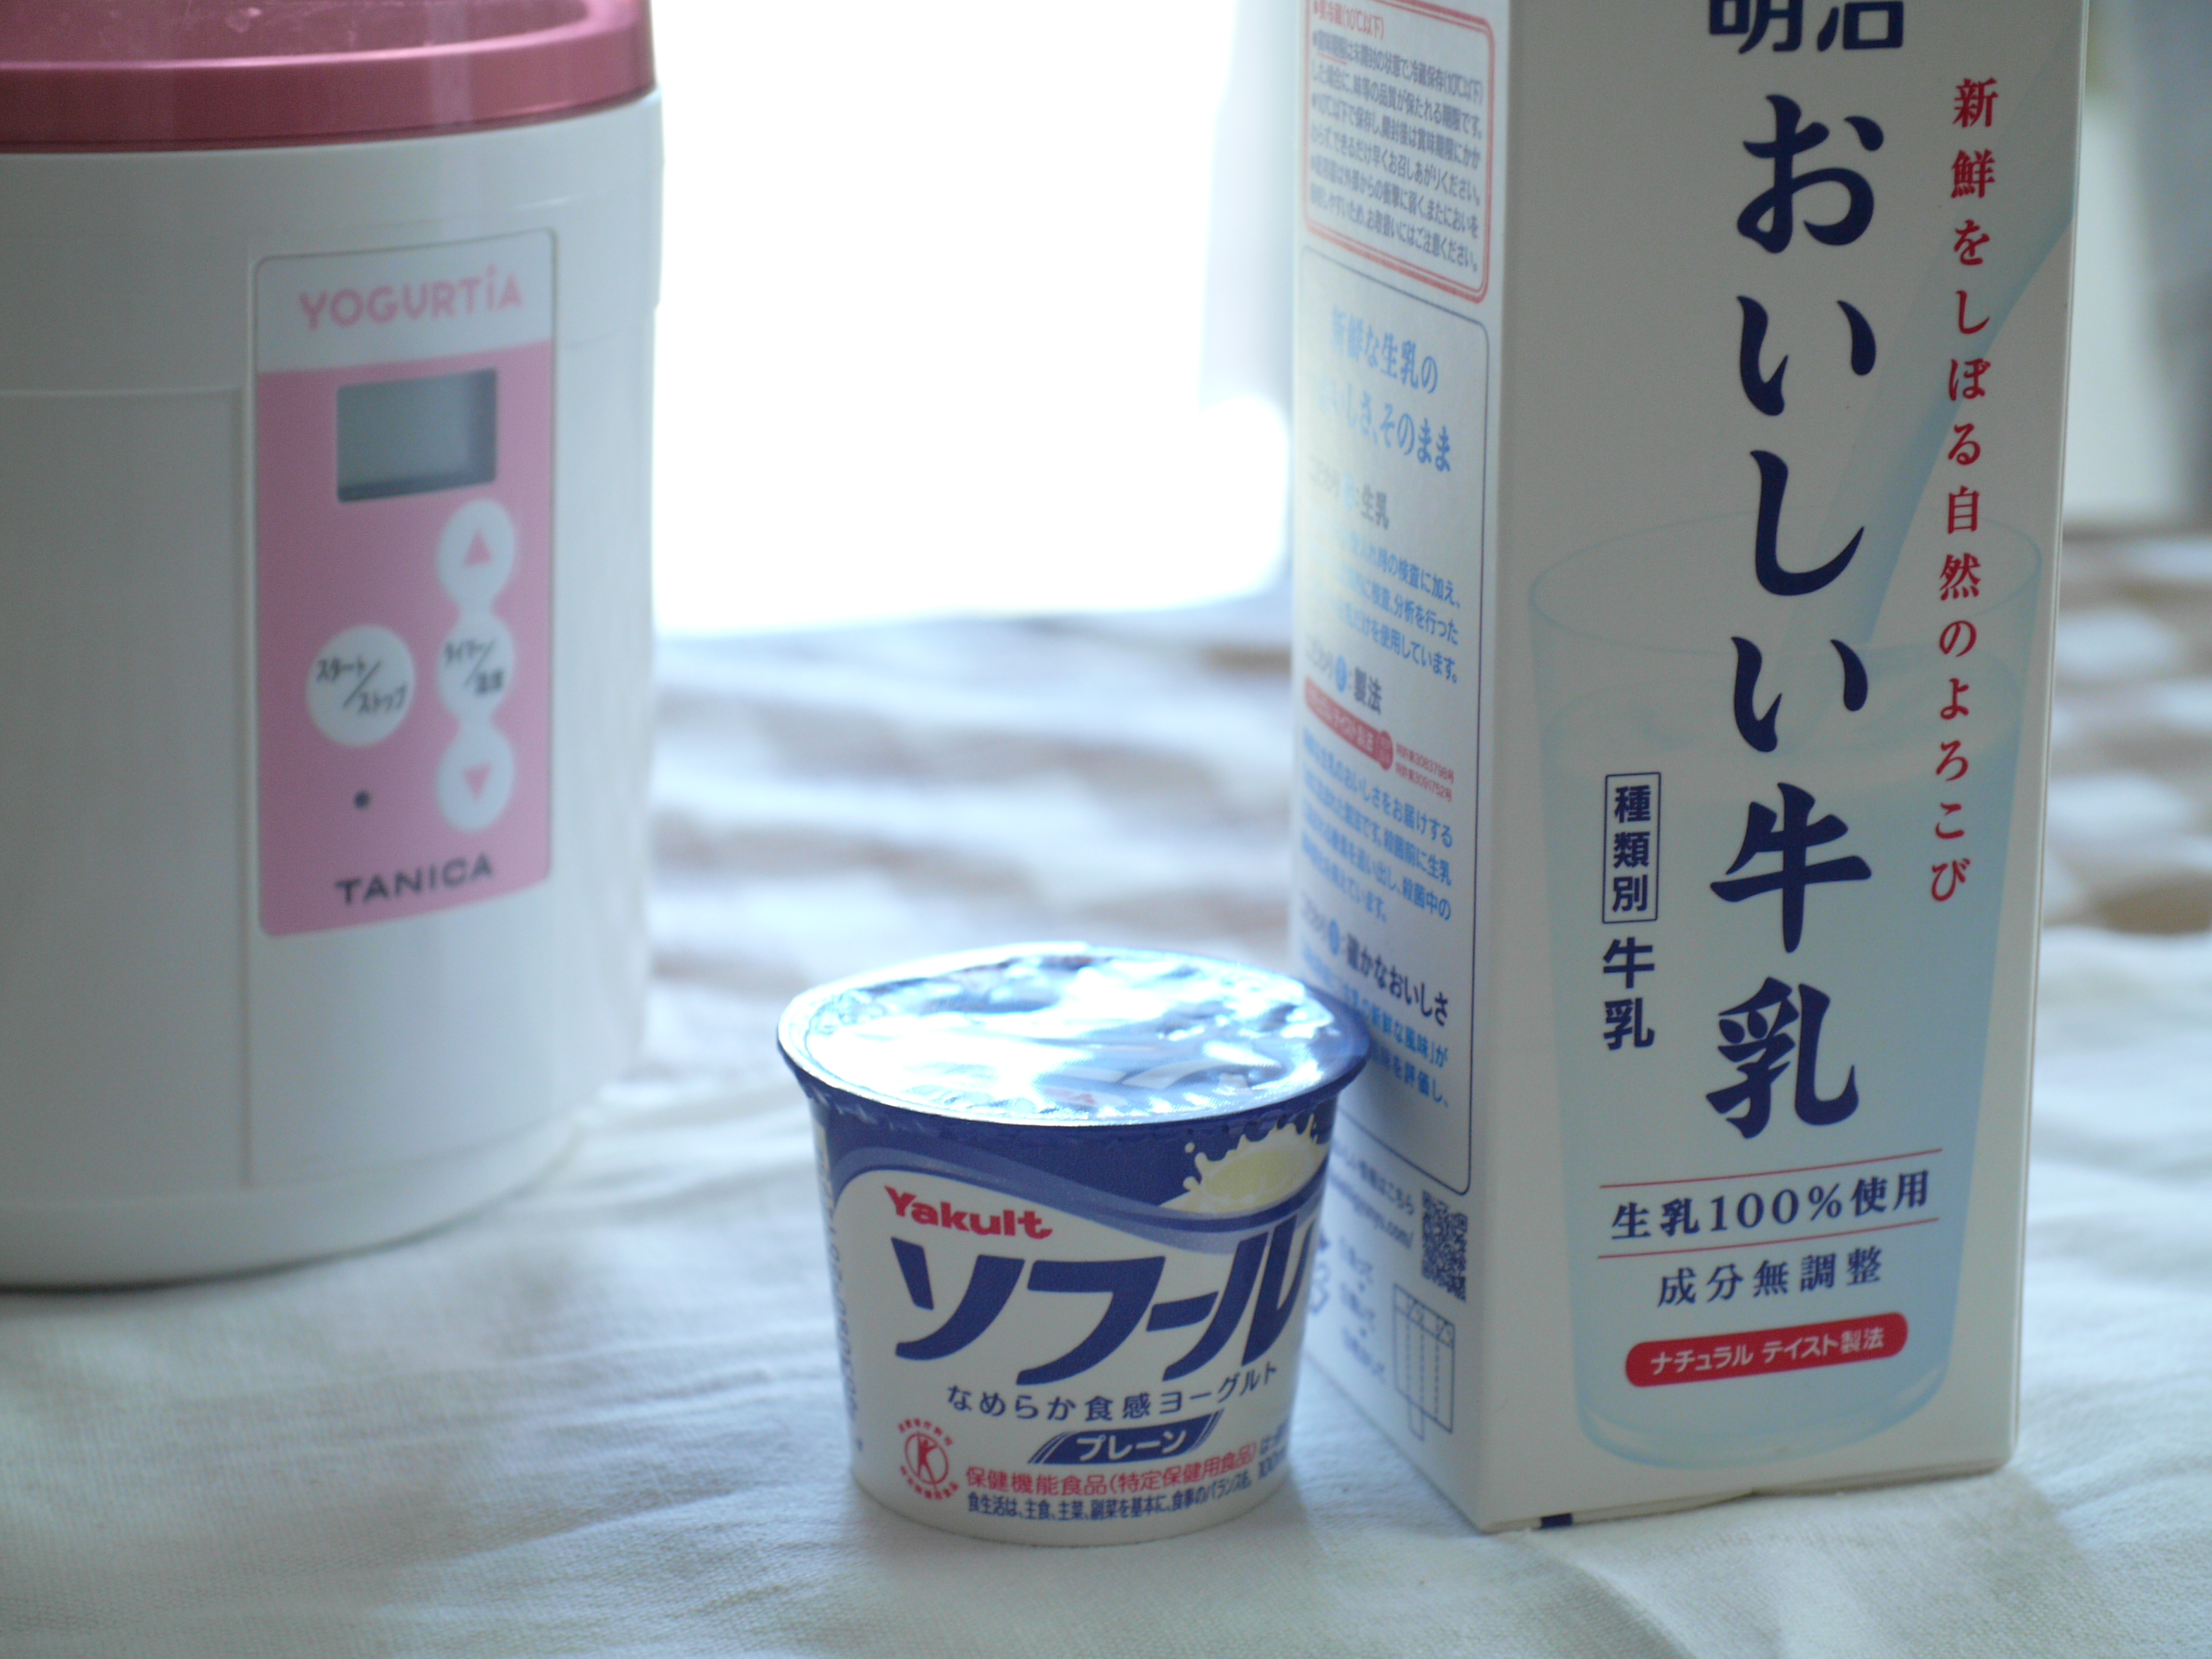 作り方 ヨーグルト ソフール おいしい牛乳編 タニカブログ